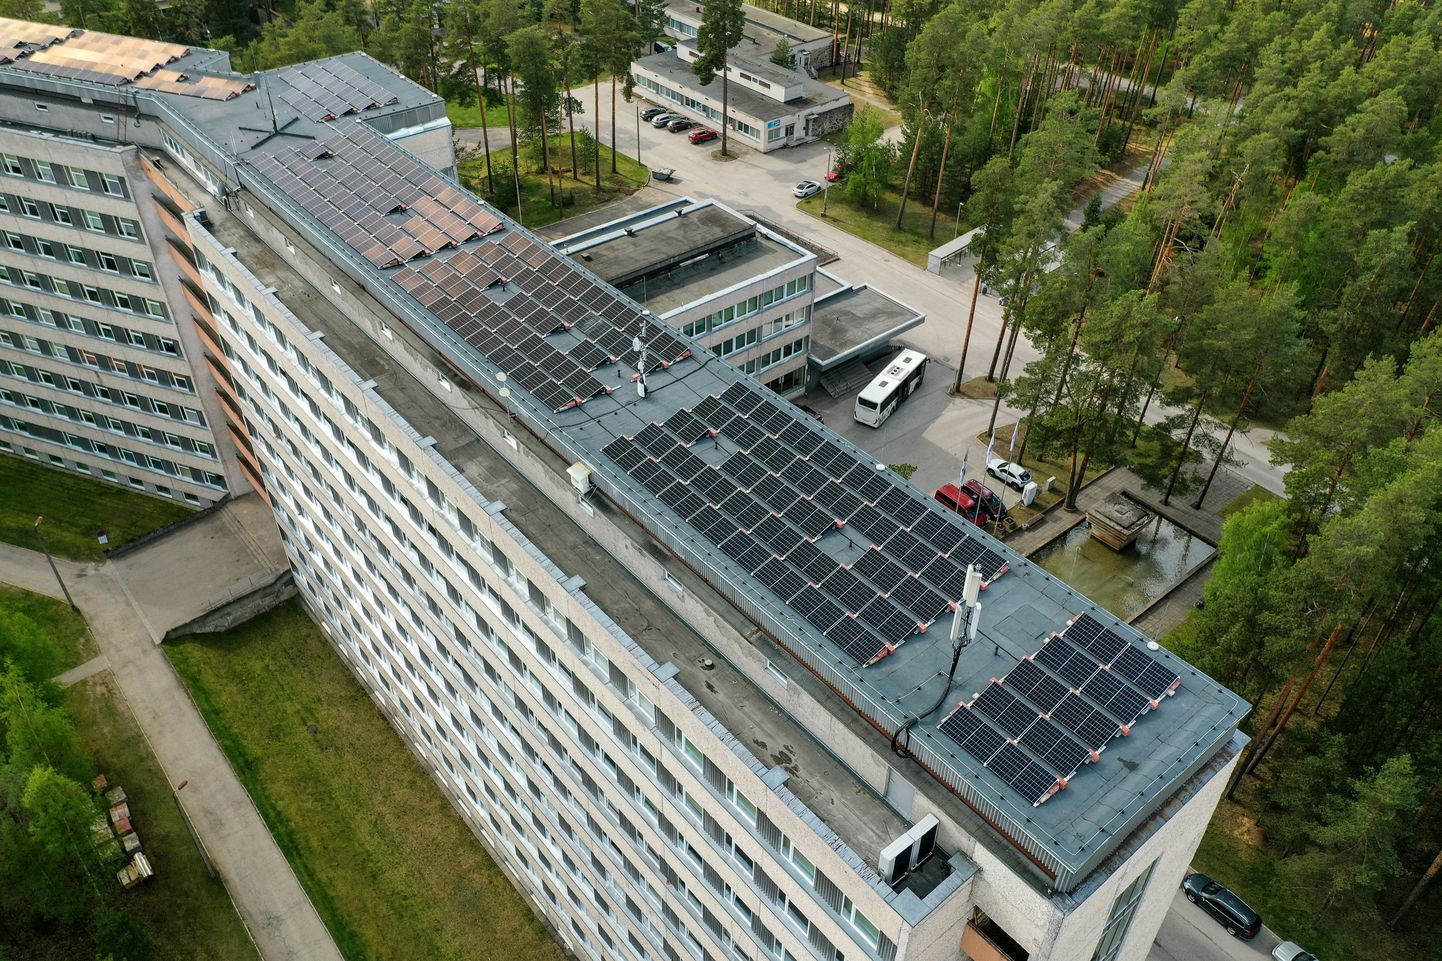 Lõuna-Eesti haigla A- ja B-korpuse katusel töötab nüüd päikesejaam.